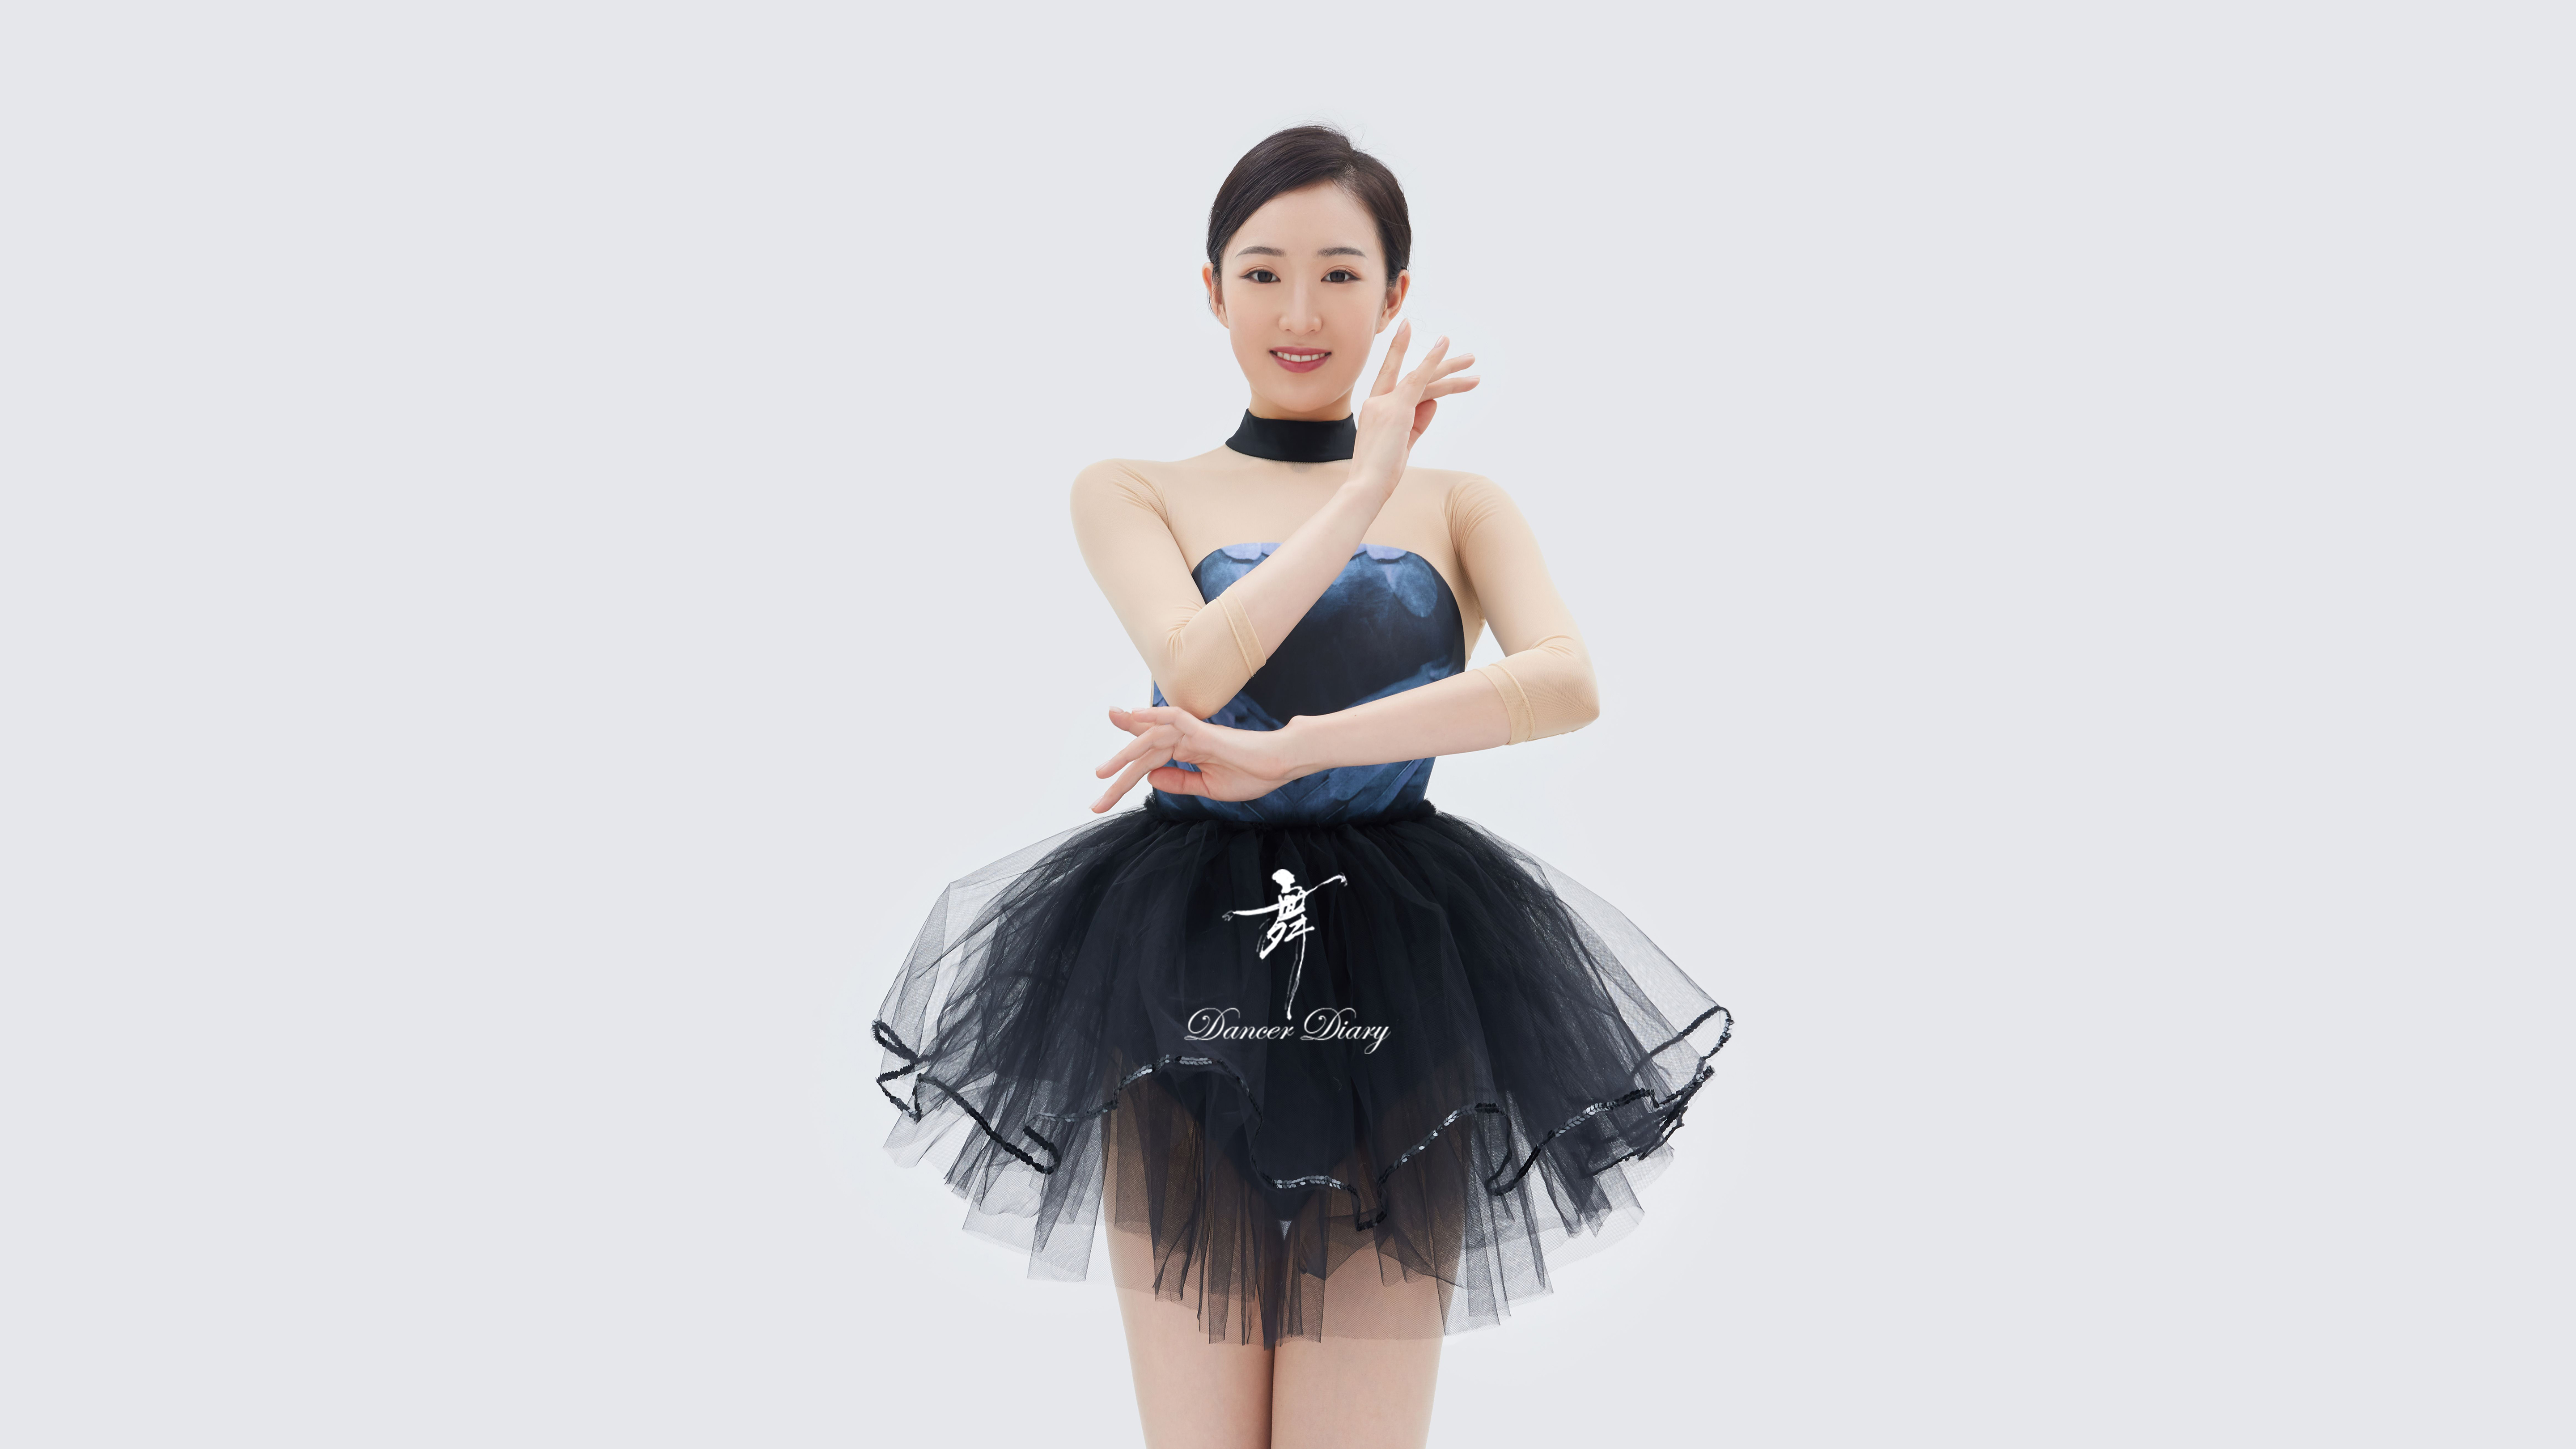 Asian Dancer Women Ballet 5760x3240